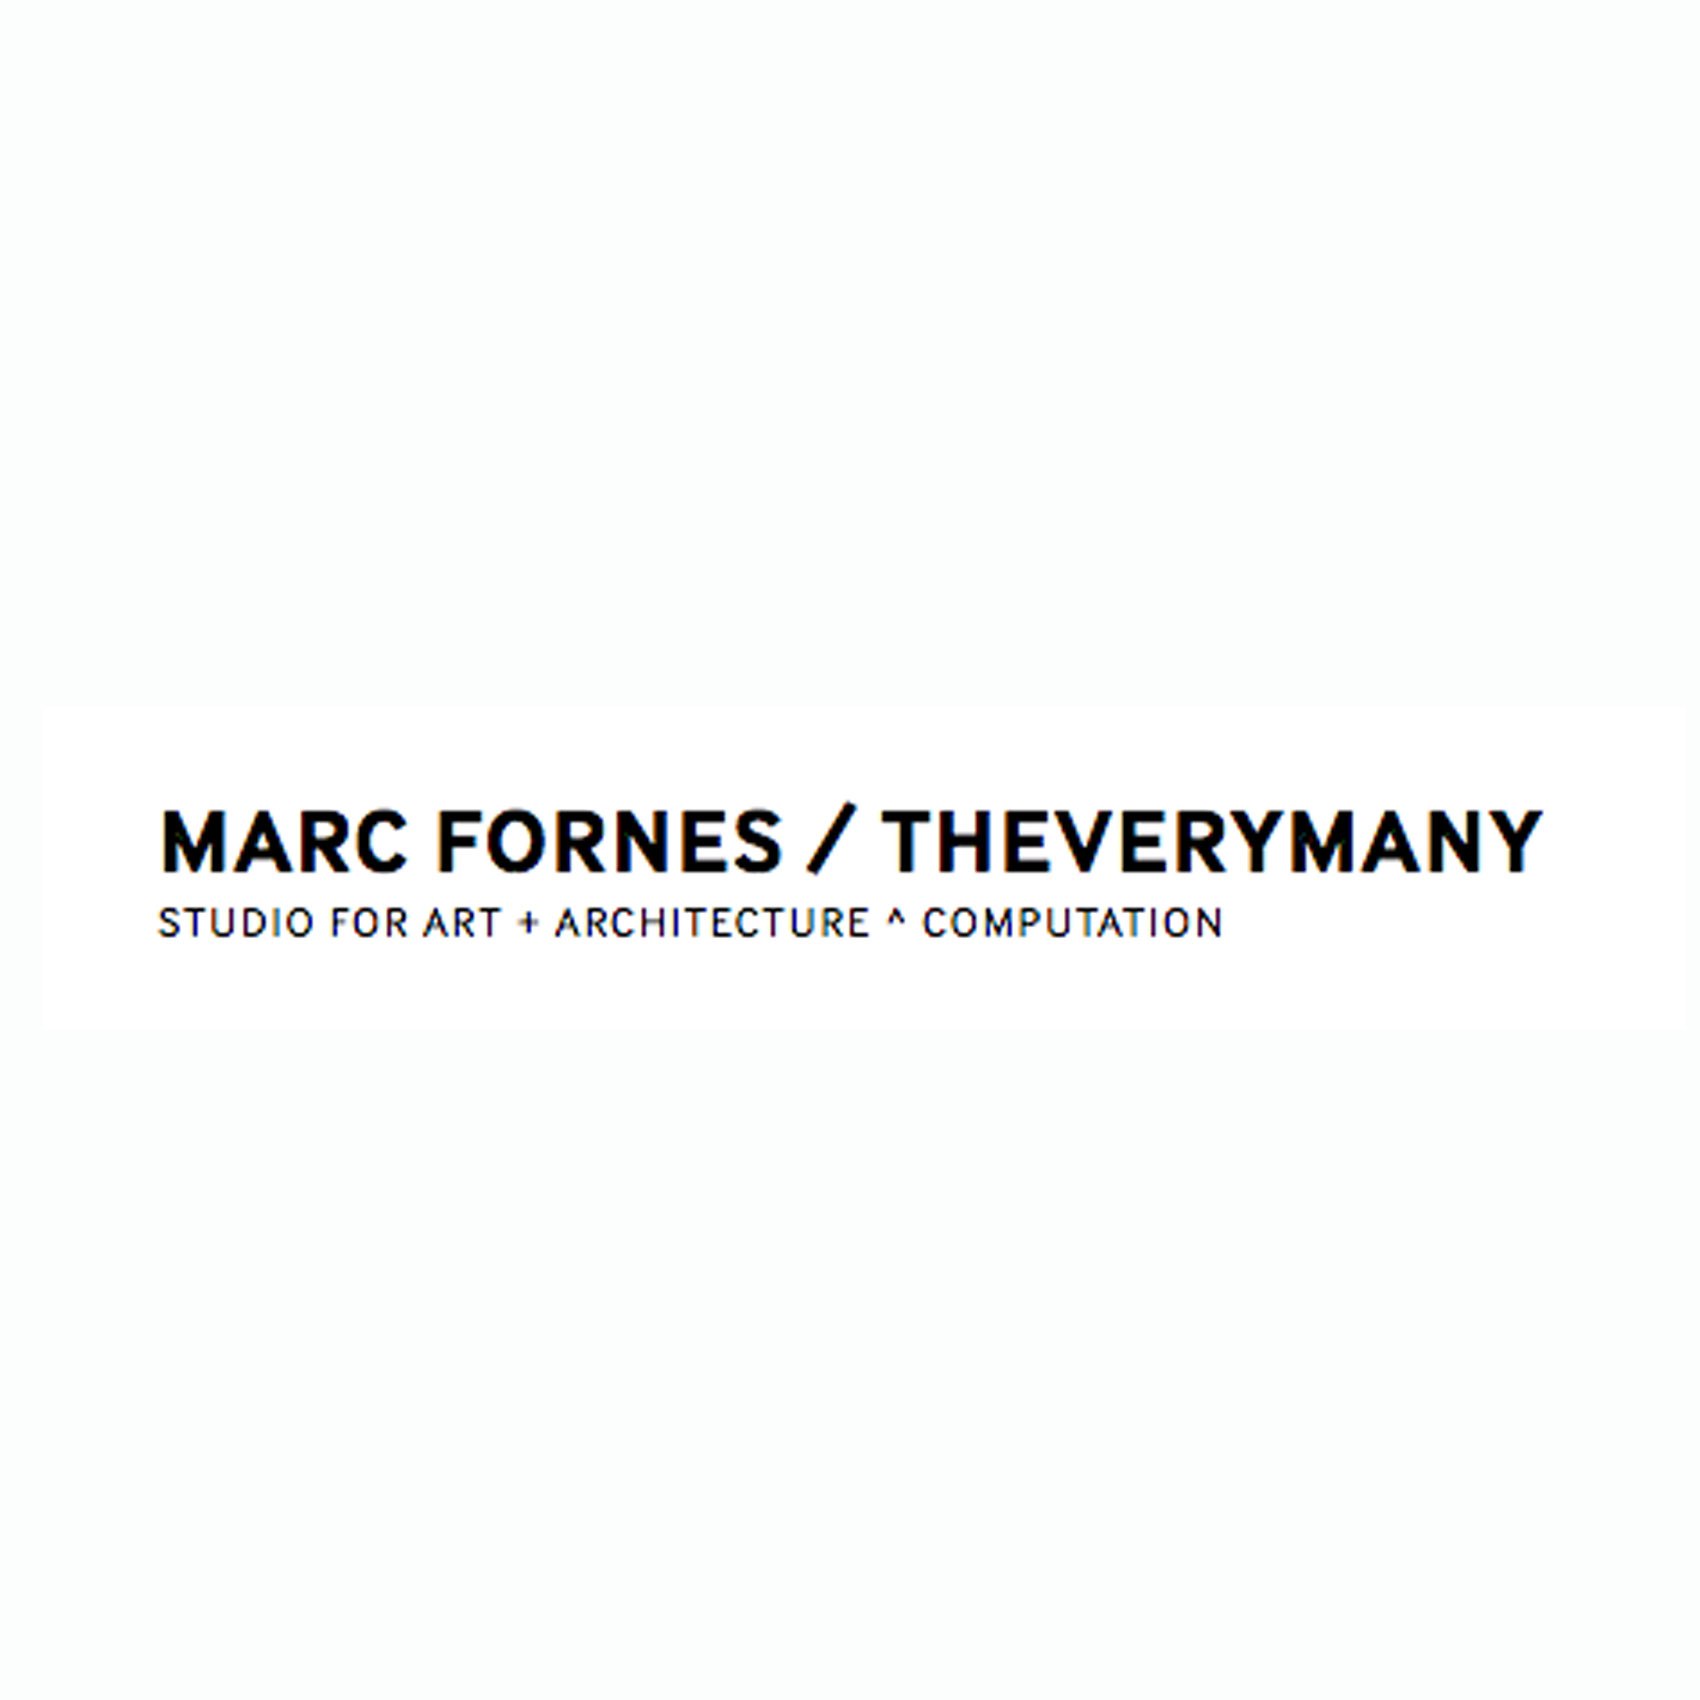 MARC FORNES/THEVERYMANY